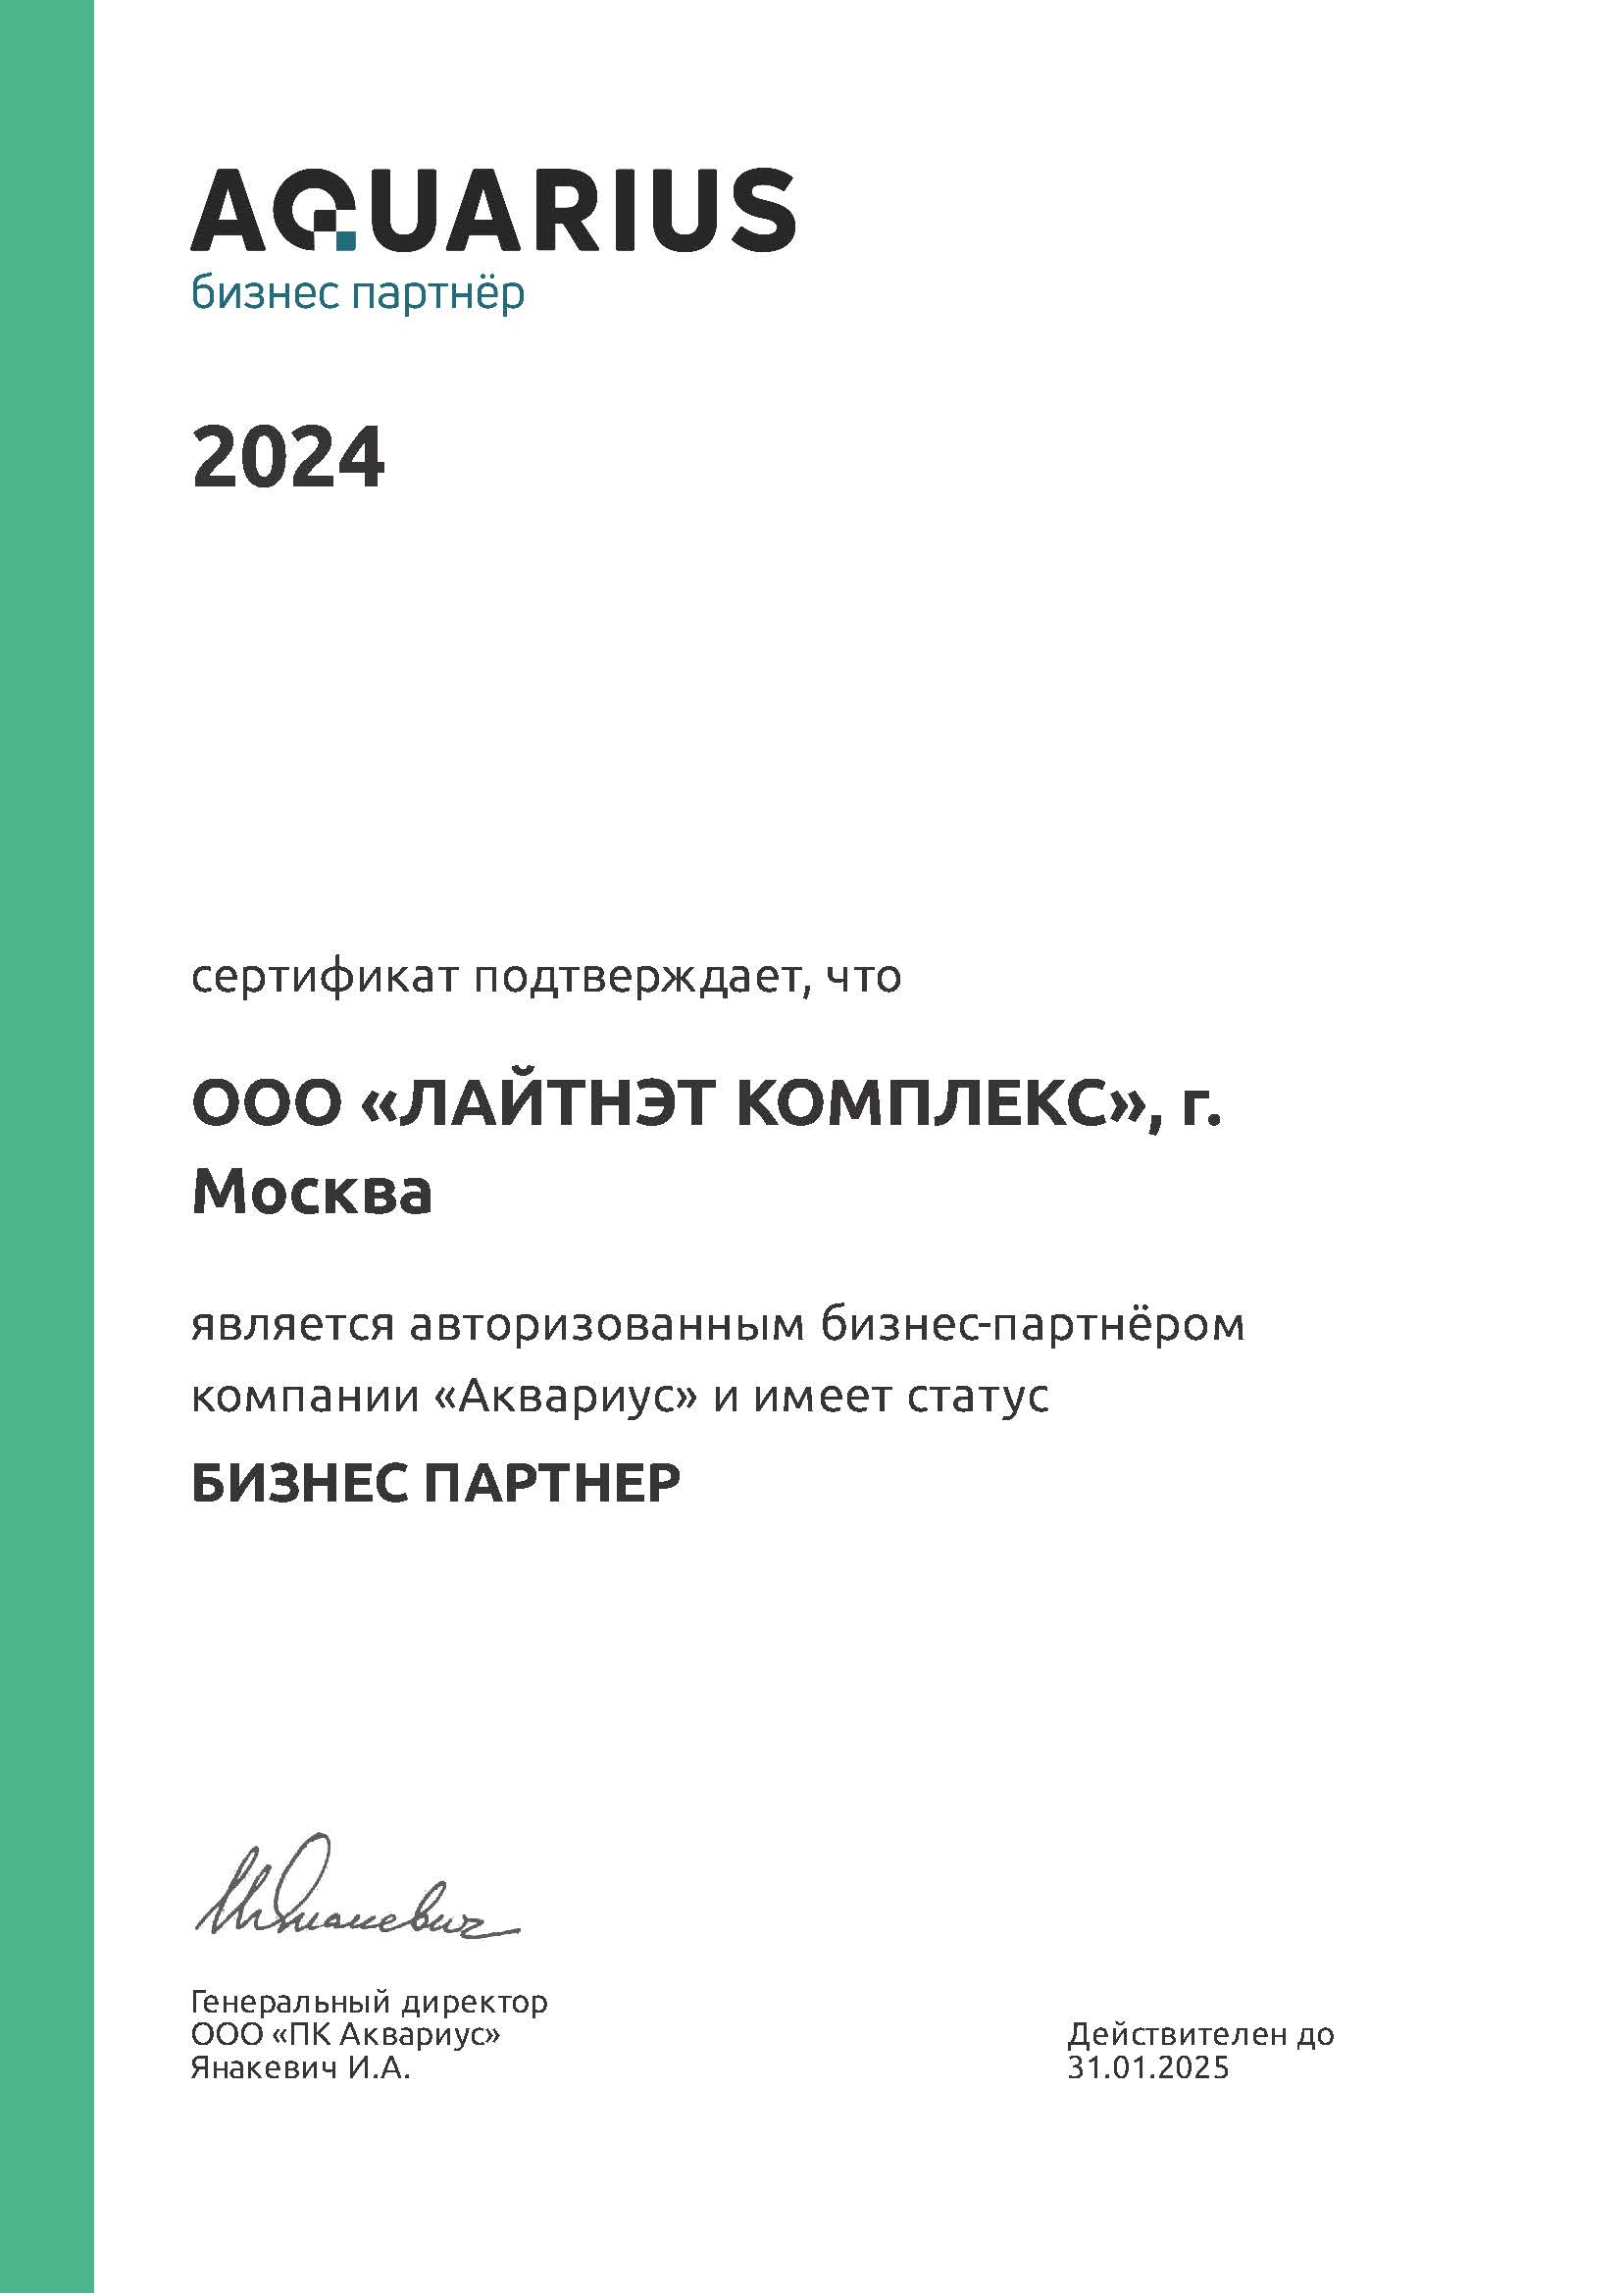 Aquarius - бизнес партнер 2024